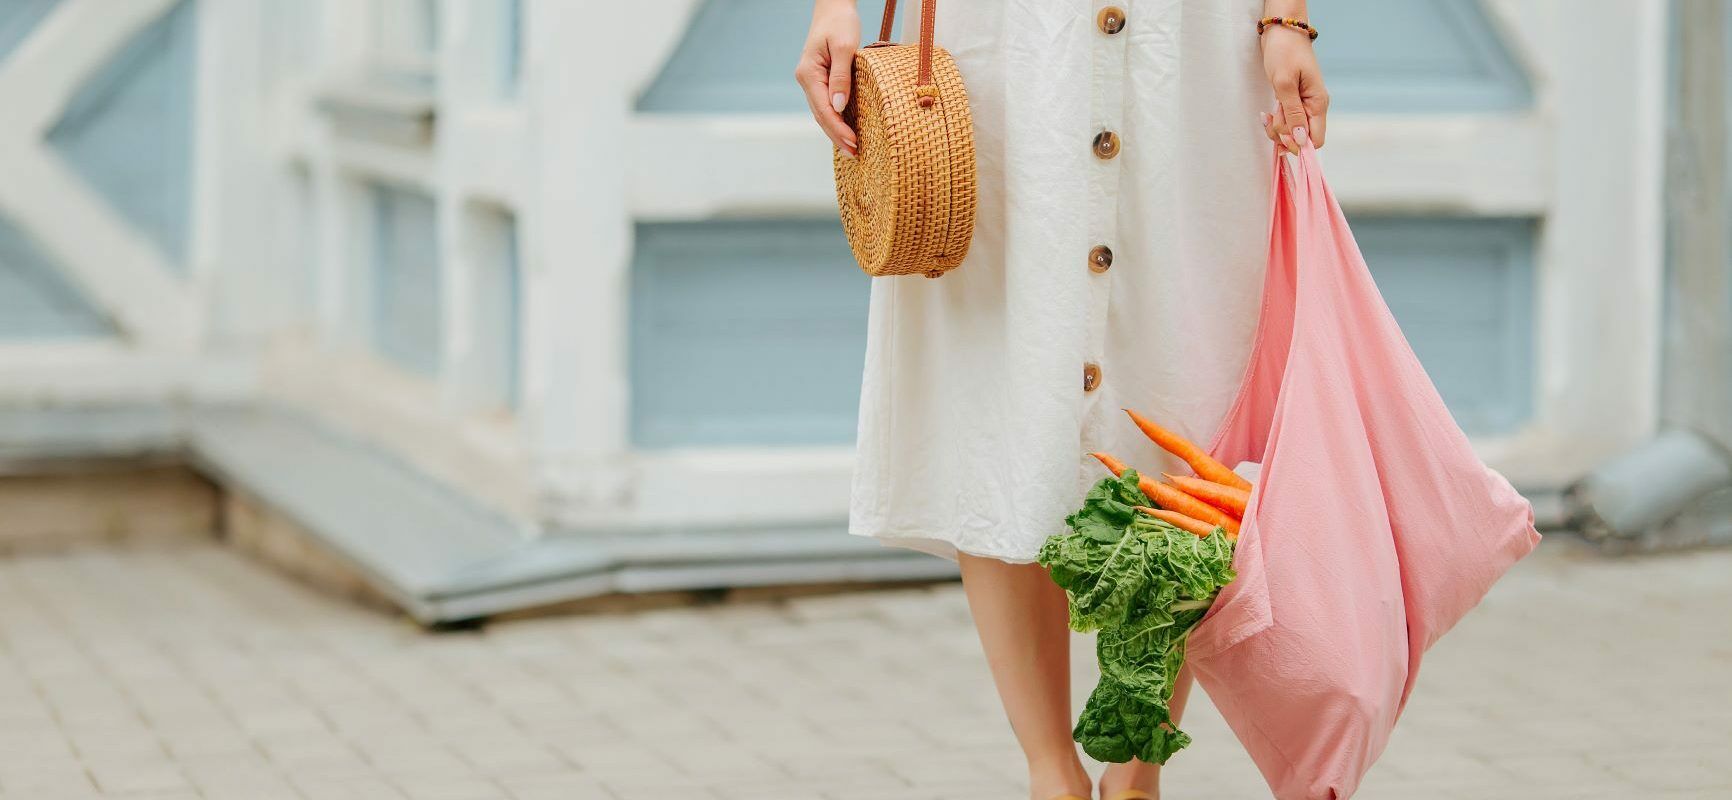 Jak być eko? Jak żyć ekologicznie? Kobieta w białej sukience i sandałach, z wiklinową torebką wiszącą na ramieniu stoi na tle białego budynku i trzyma w ręku różową materiałową torbę na zakupy z warzywami w środku.